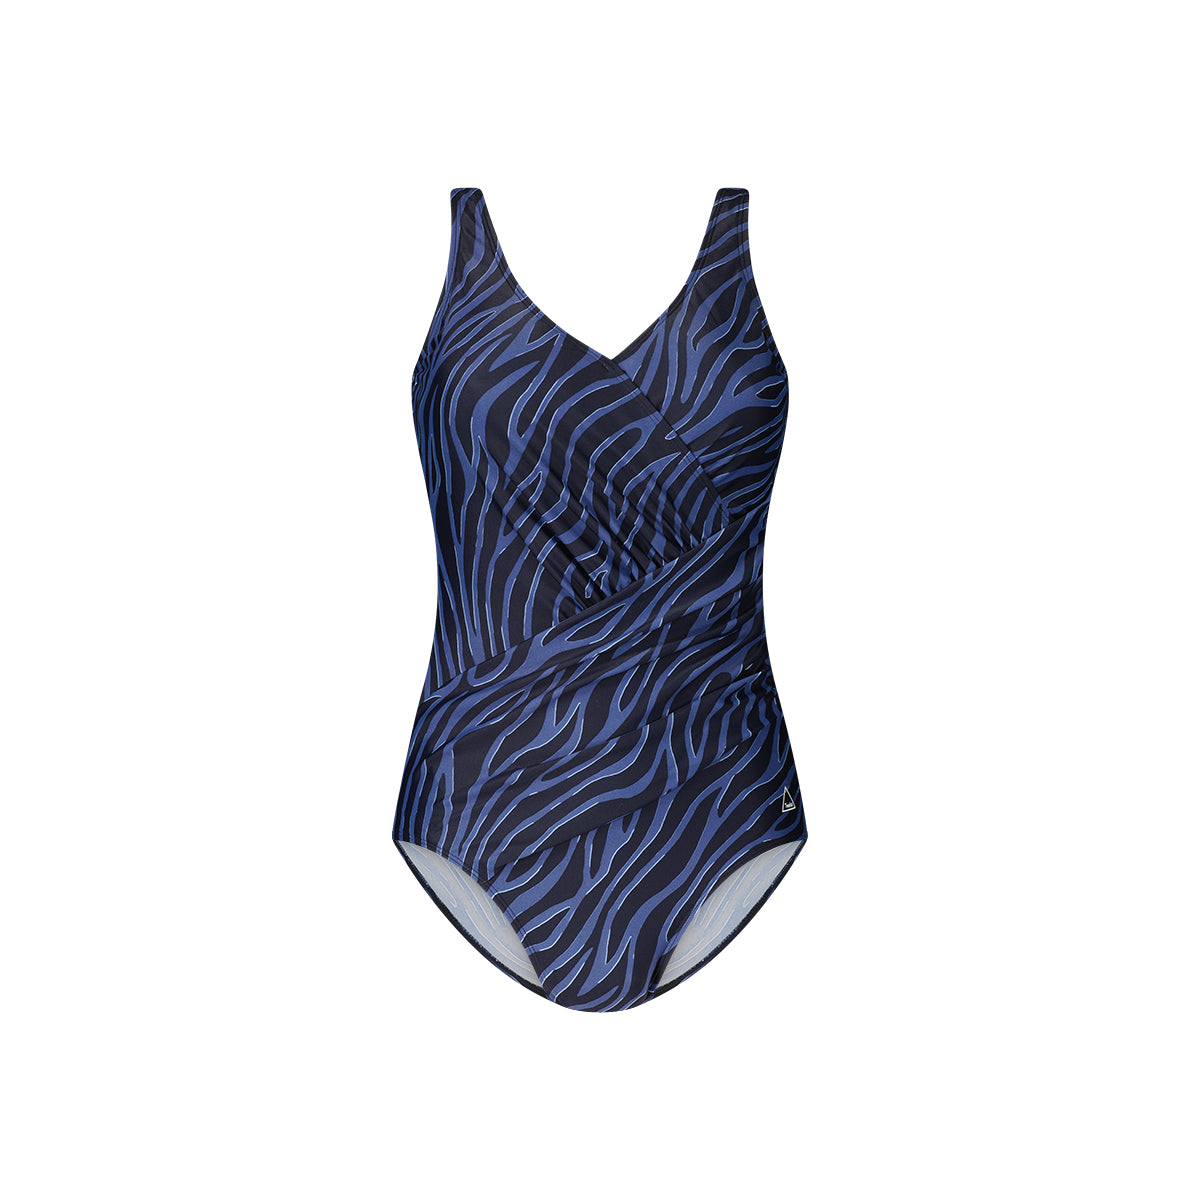 ten Cate Swim (Tweka) shape badpak soft cup - 10955 - Current Blue